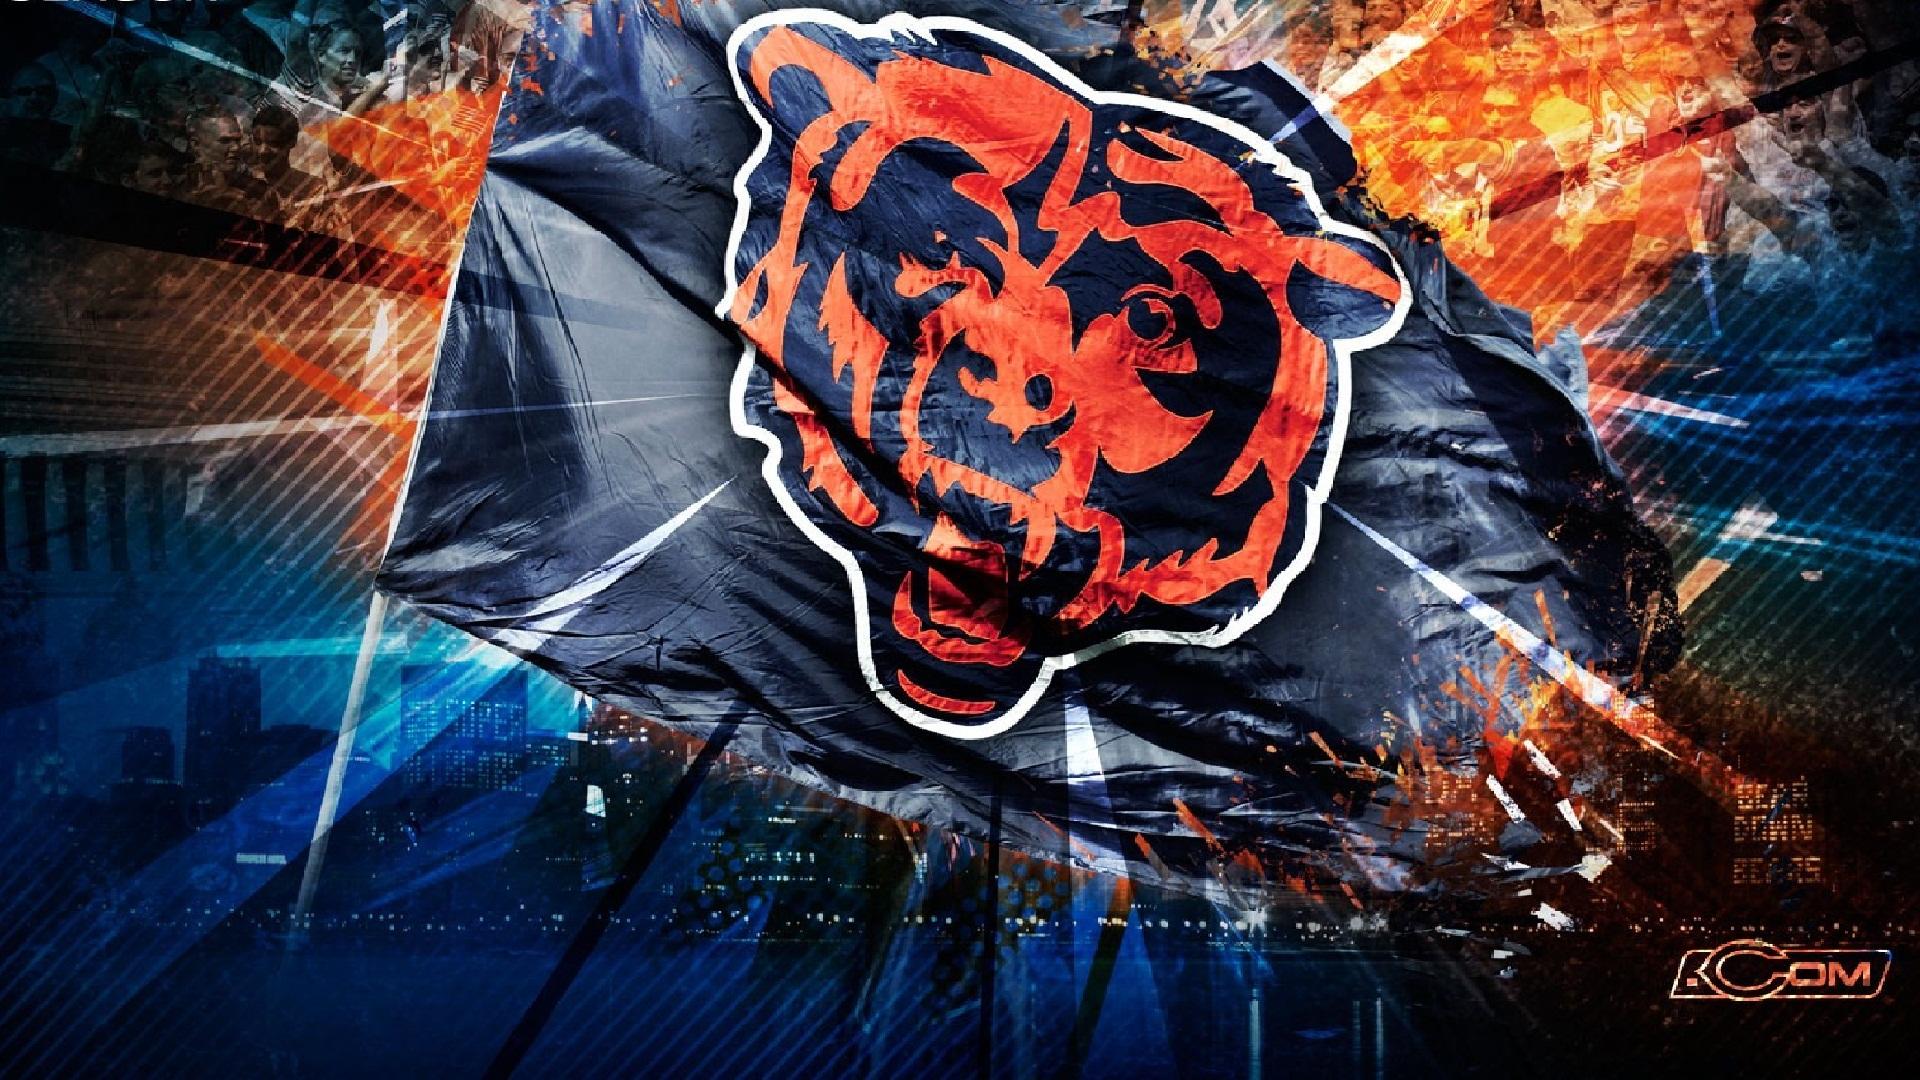 Chicago Bears Wallpaper